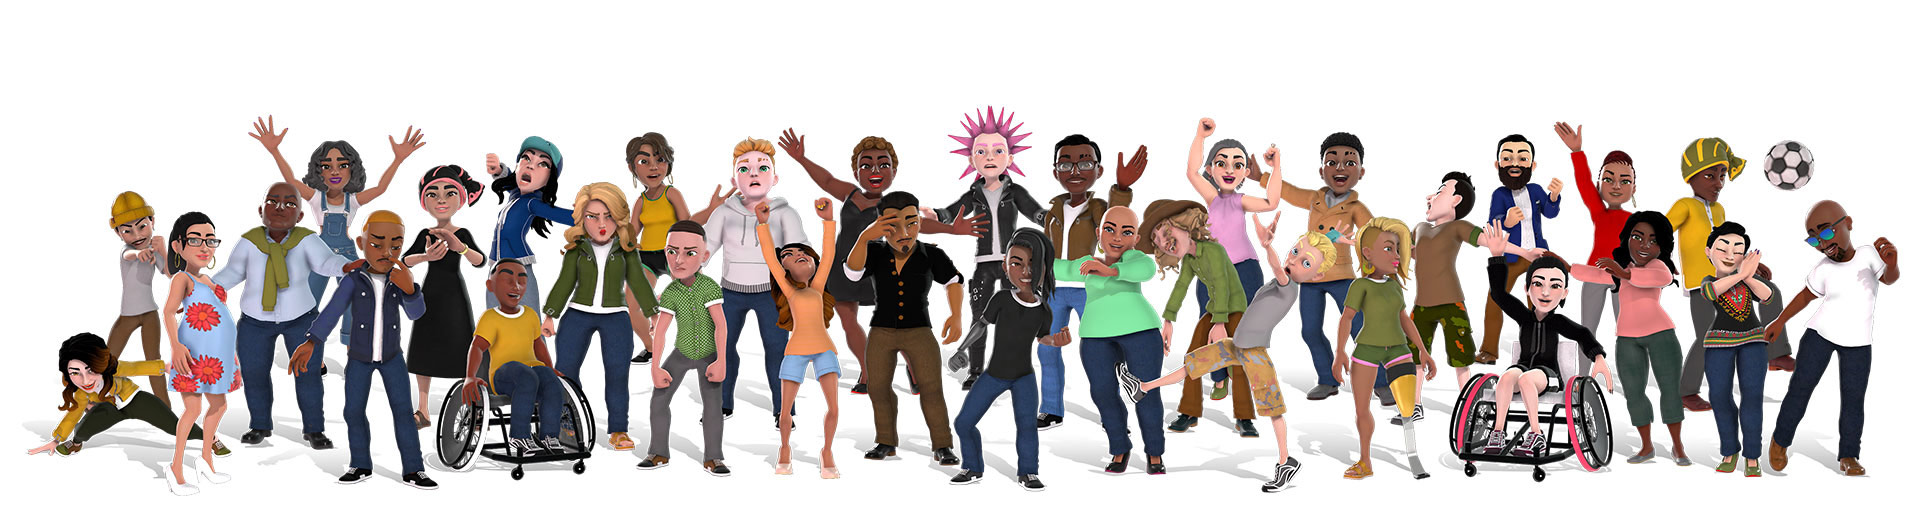 Xbox-avatarer viser en mangfoldig gruppe mennesker i forskjellige antrekk